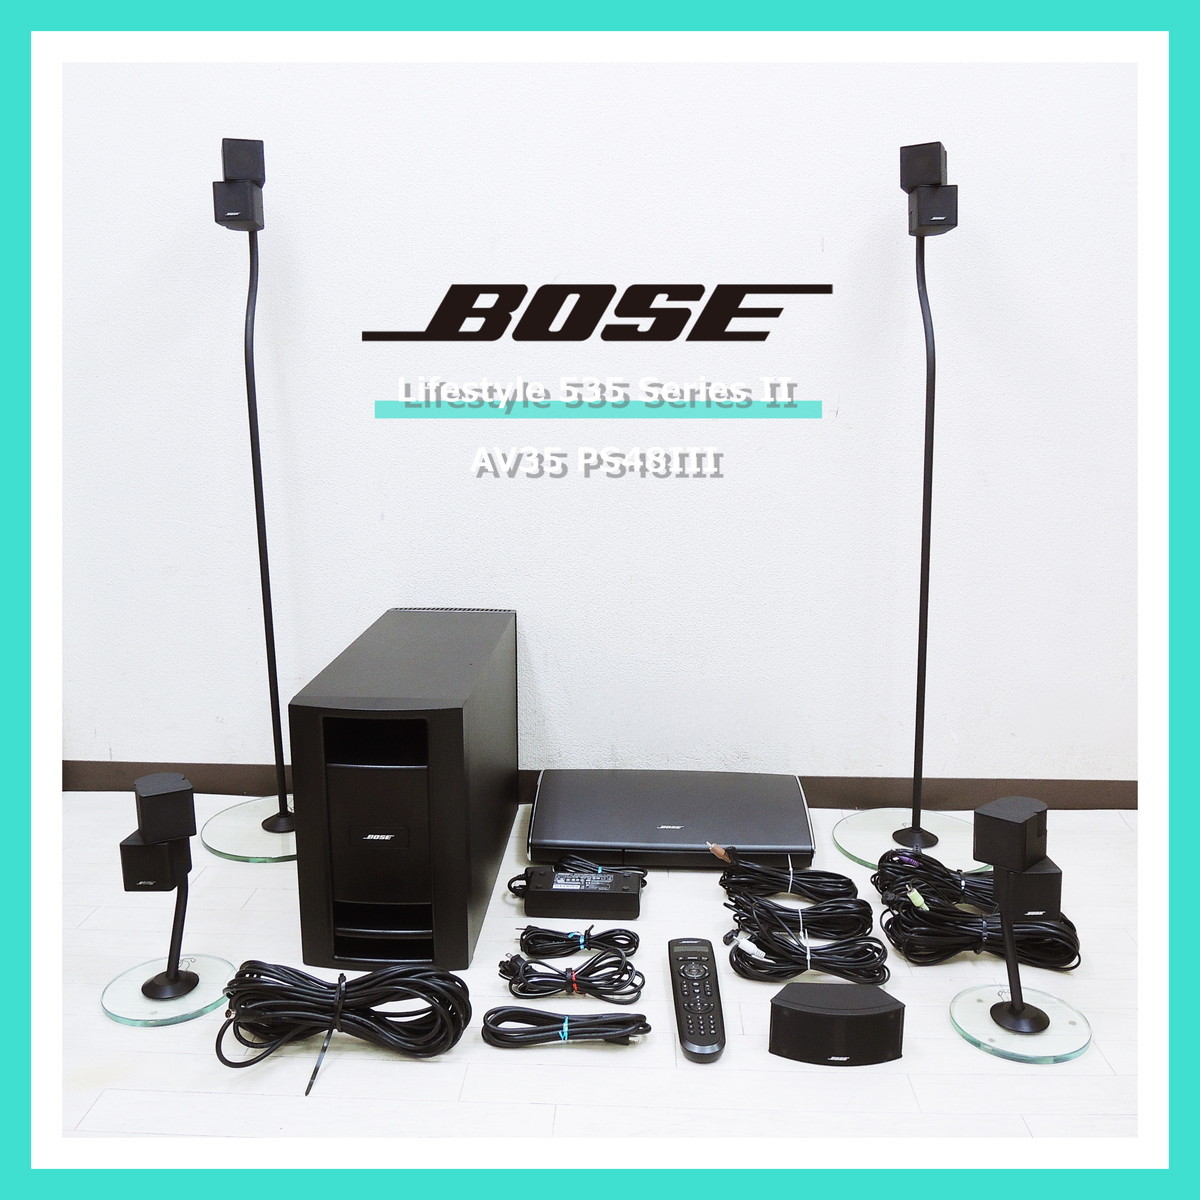 【即決!早い者勝ち!】 BOSE Lifestyle 535 Series II ホーム エンターテイメント シアター AV35 PS48 III ボーズ システム 5.1ch